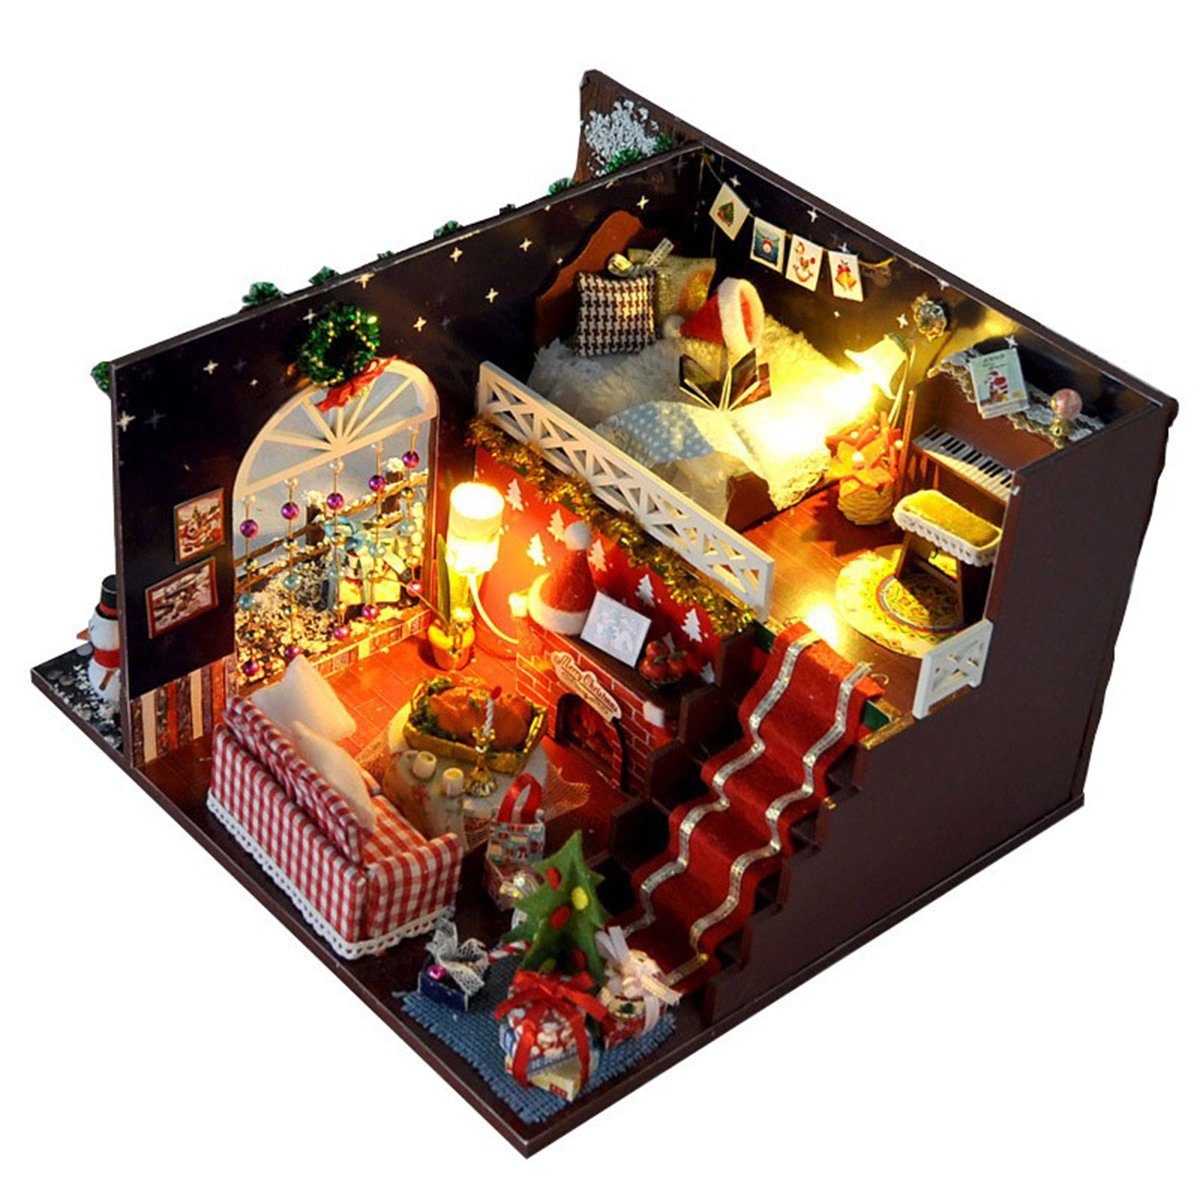 autolock Weihnachtshaus Miniatur Puppenhaus Weihnachtshaus Kit DIY Weihnachtsgeschenke Puppenhaus Handwerk, Modell 3D Handmade